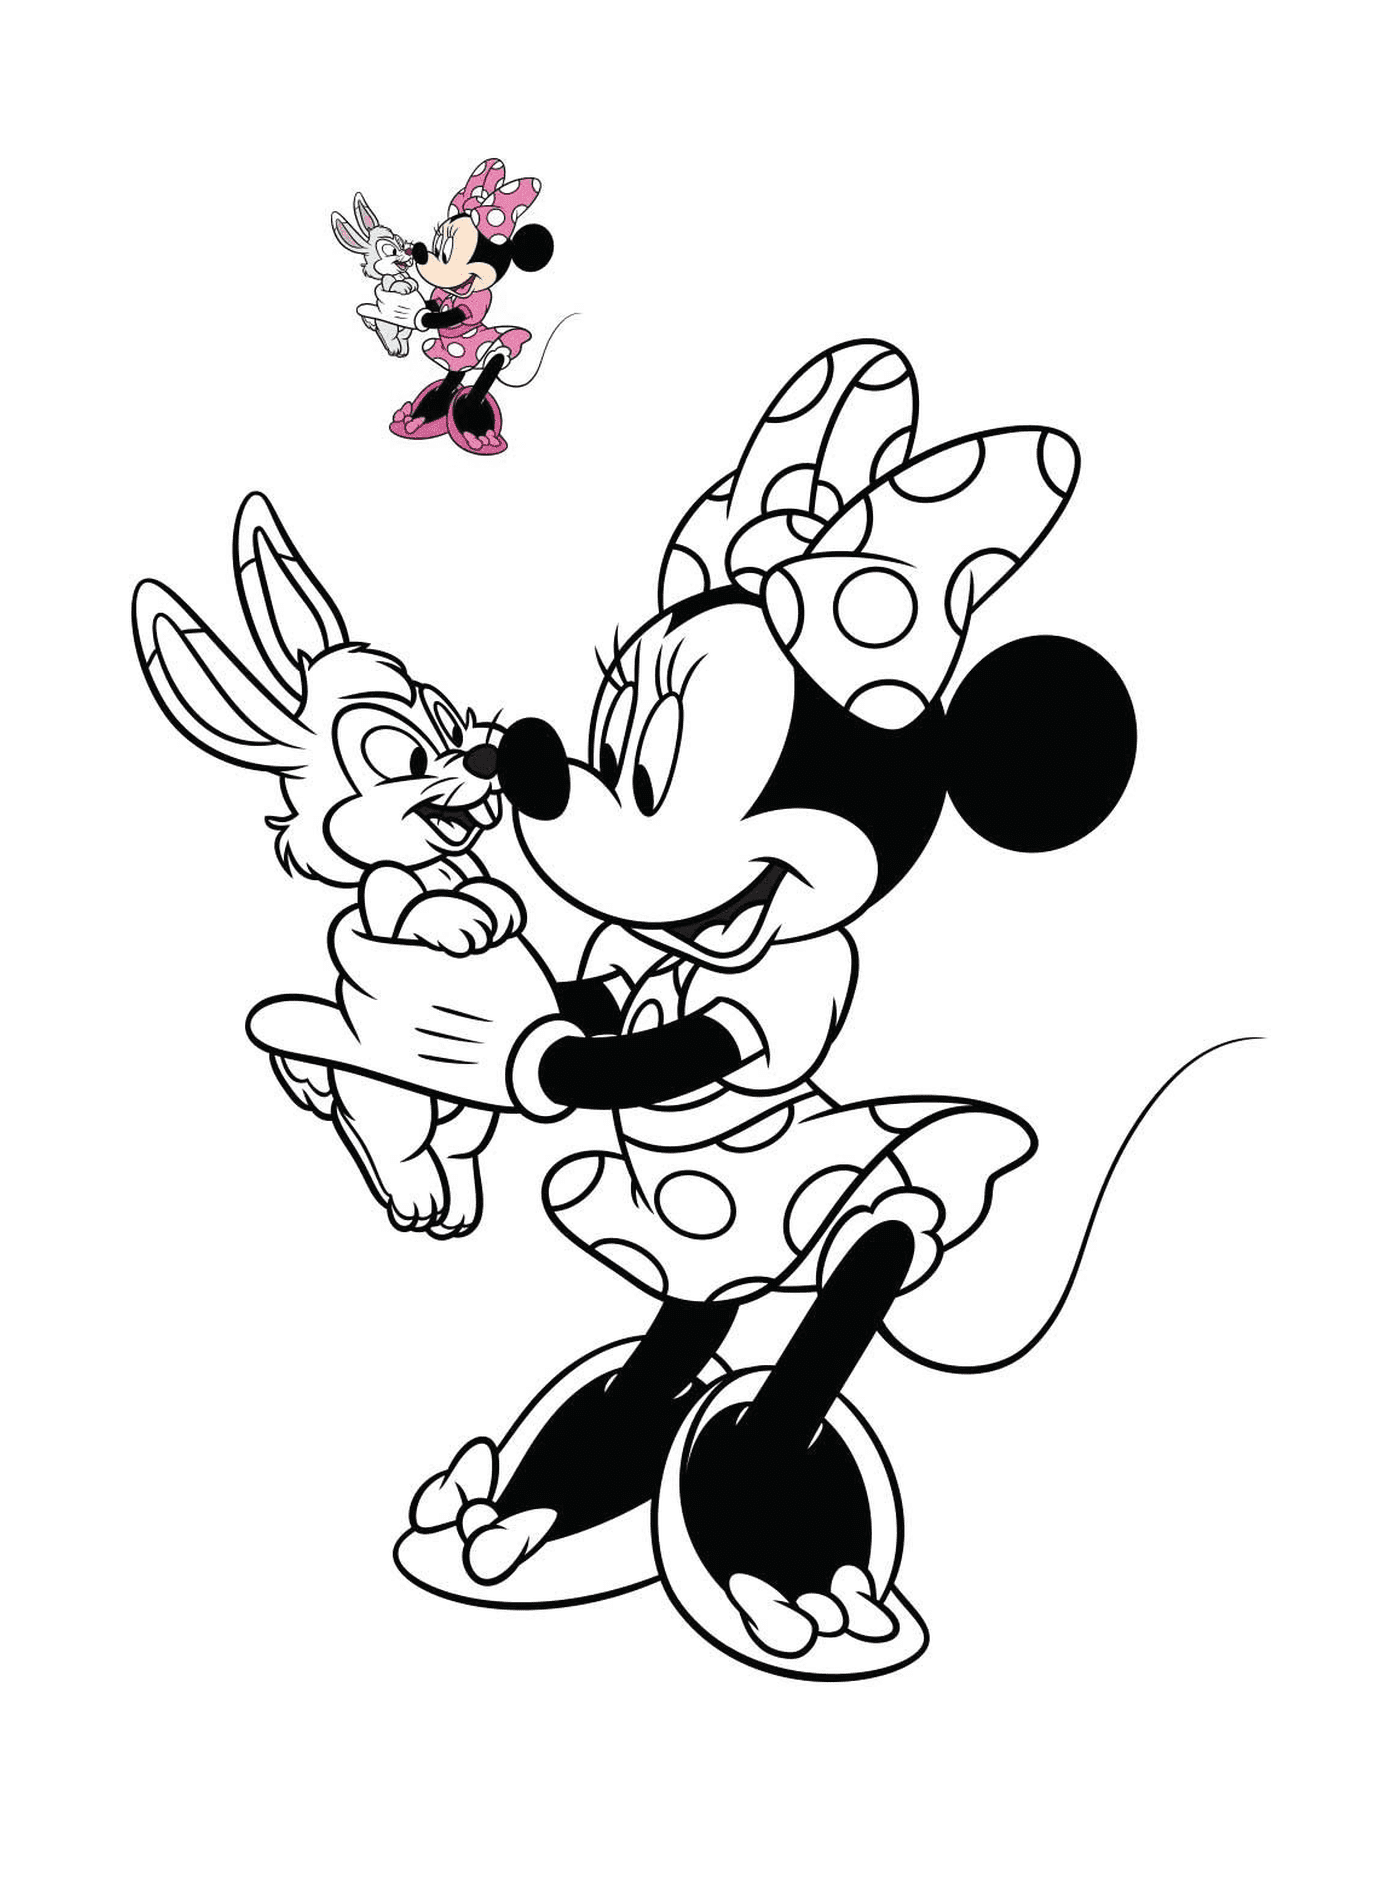  Minnie Mouse segura um coelho nas mãos 